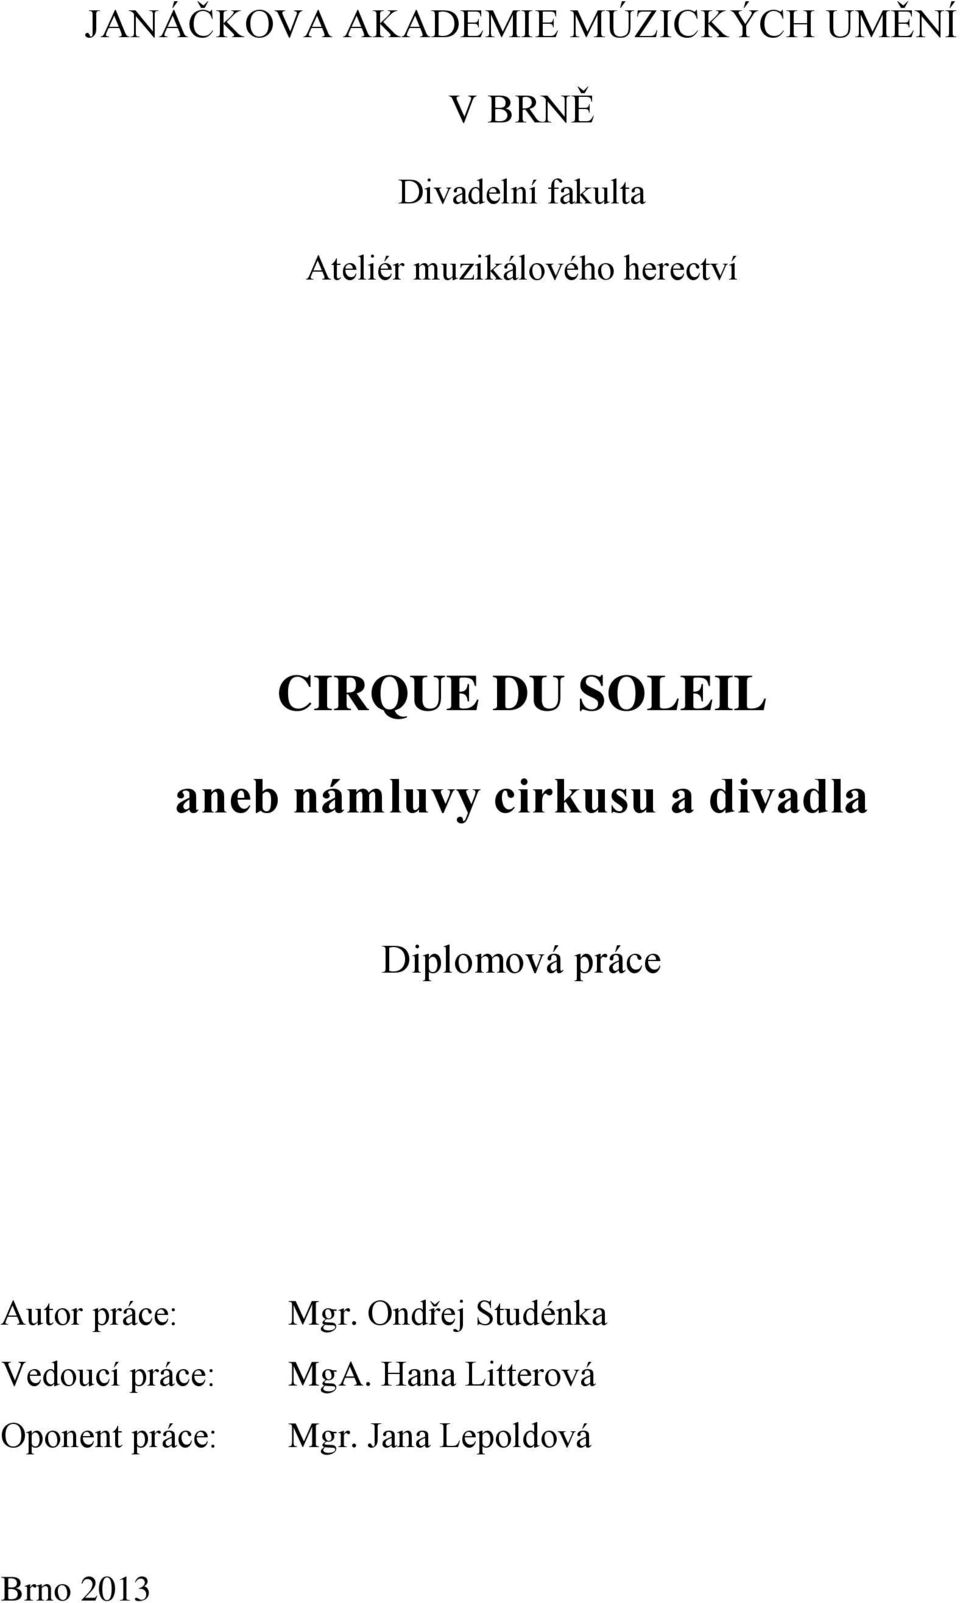 CIRQUE DU SOLEIL. aneb námluvy cirkusu a divadla - PDF Stažení zdarma